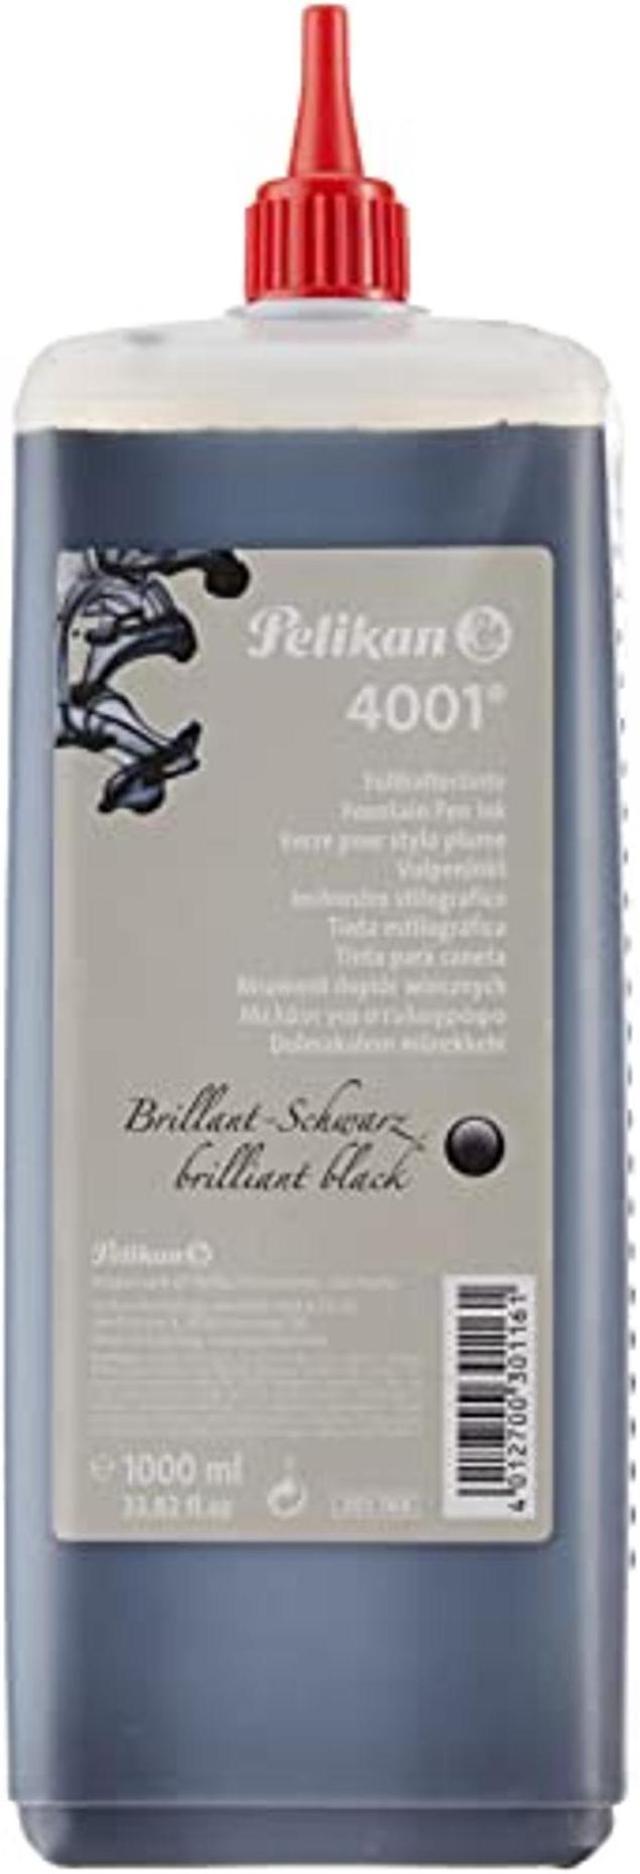 Pelikan 4001 Bottled Ink for Fountain Pens, Brilliant Black, 1 Liter, 1  Each (301168) 